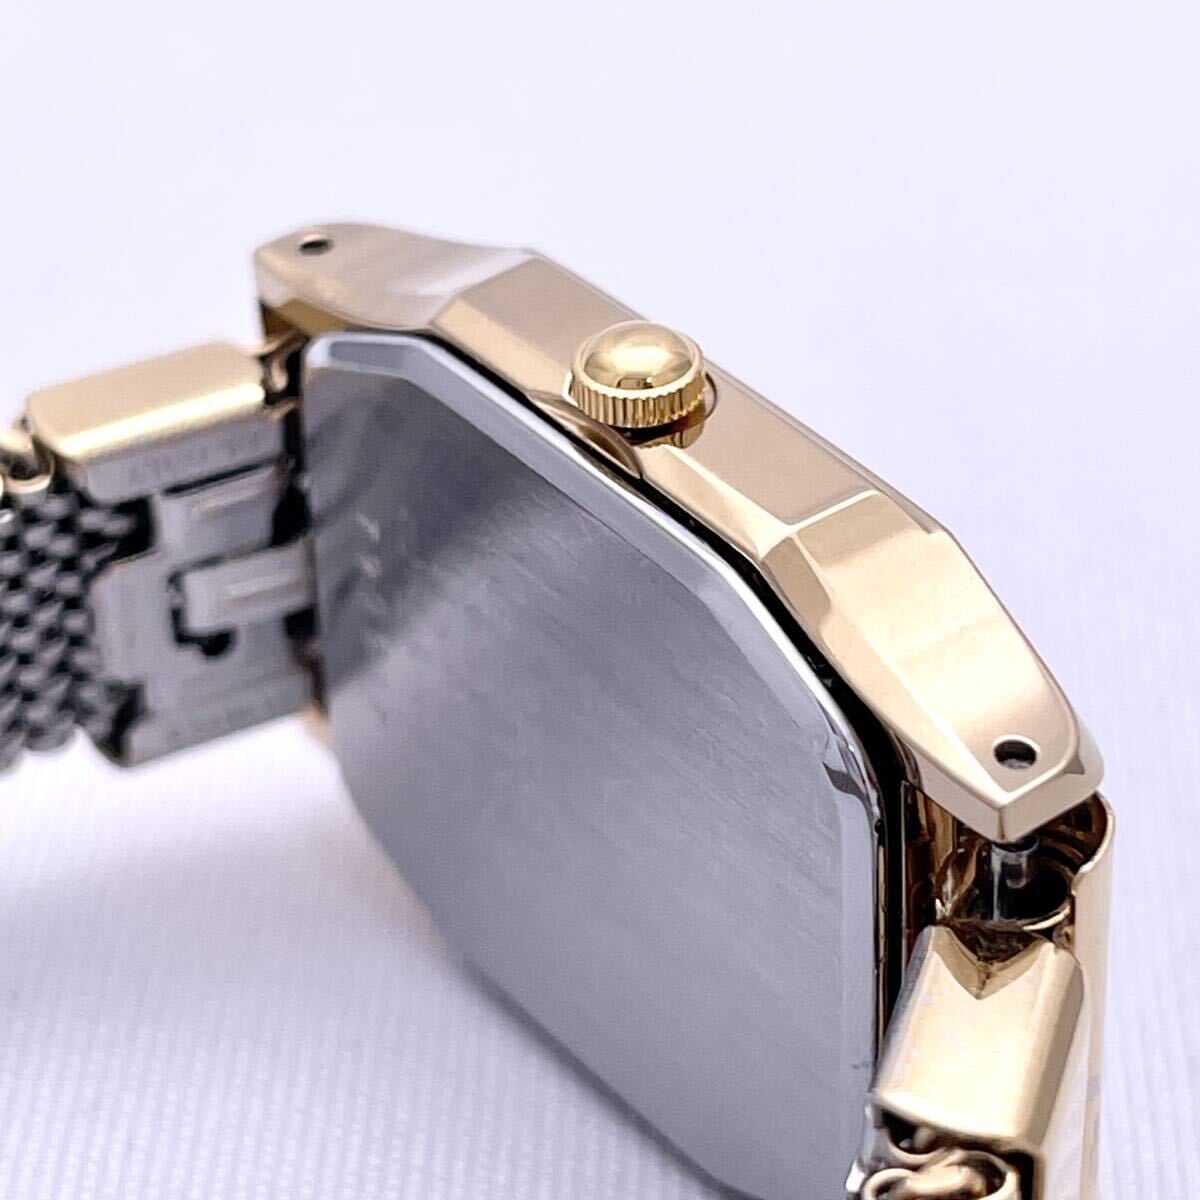 SEIKO セイコー SPIRIT スピリット 4N21-5180 腕時計 ウォッチ クォーツ quartz 金 ゴールド P340